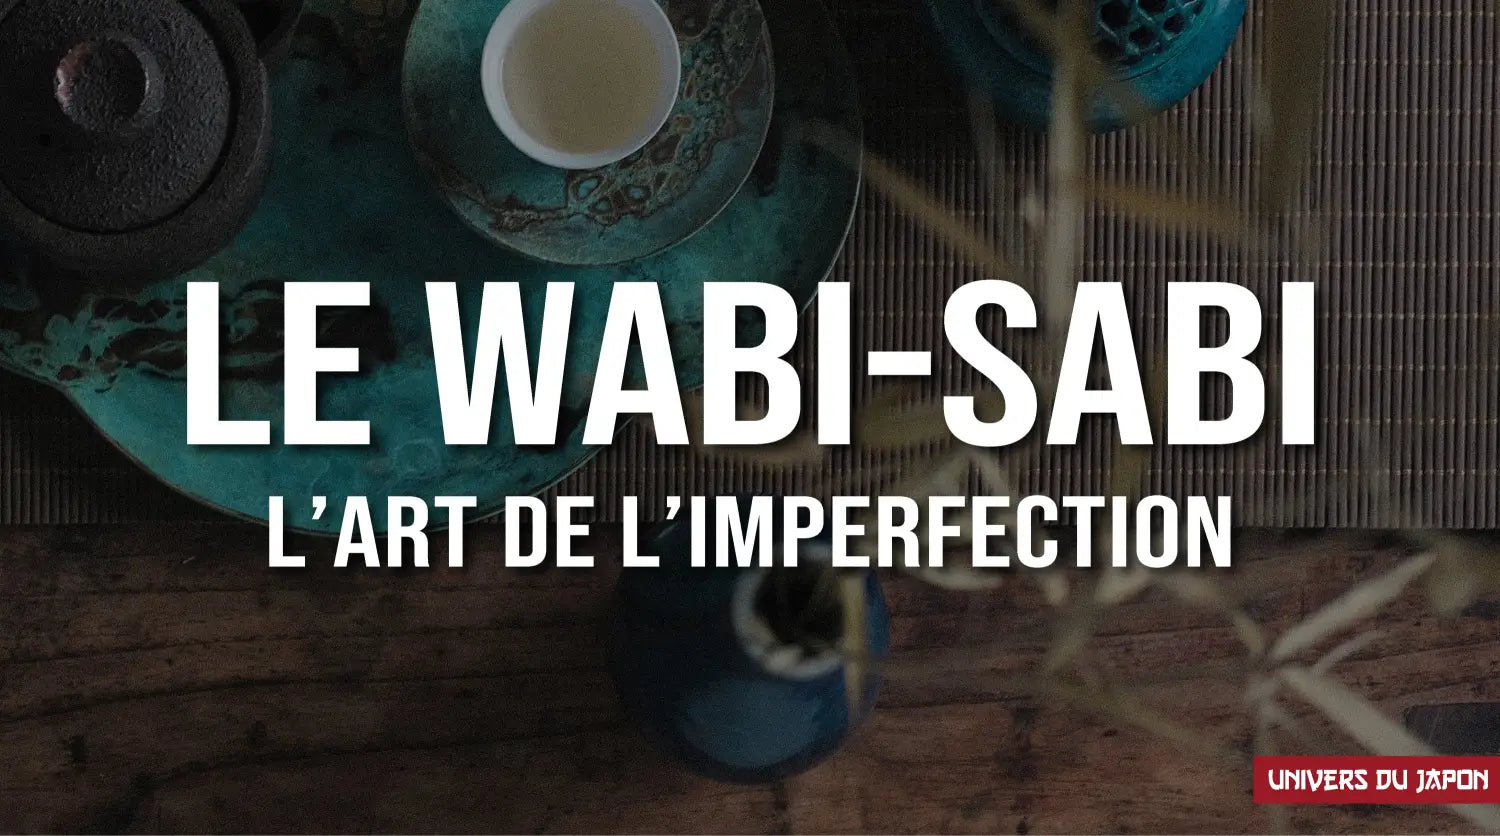 WABI-SABI: COMMENT LIER DÉCORATION ET SPIRITUALITÉ?